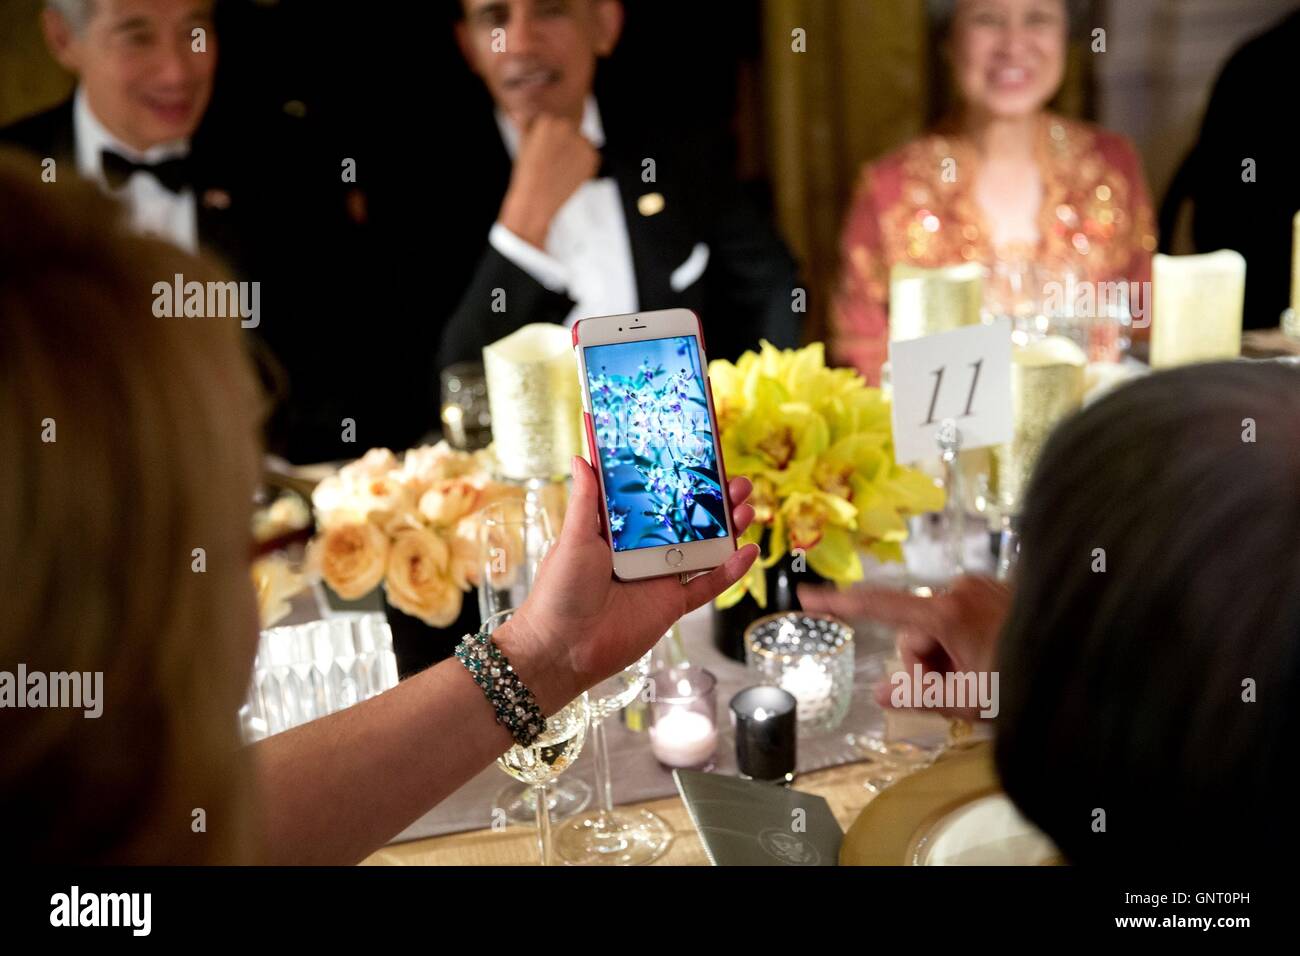 Il Presidente degli Stati Uniti Barack Obama sorrisi come membro per la cena gli ospiti visualizza una foto su un ibrido di orchidea telefono mobile che Singapore chiamato in onore di Obamas durante lo stato la cena nella Sala Est della Casa Bianca il 2 agosto 2016 a Washington, DC. Foto Stock